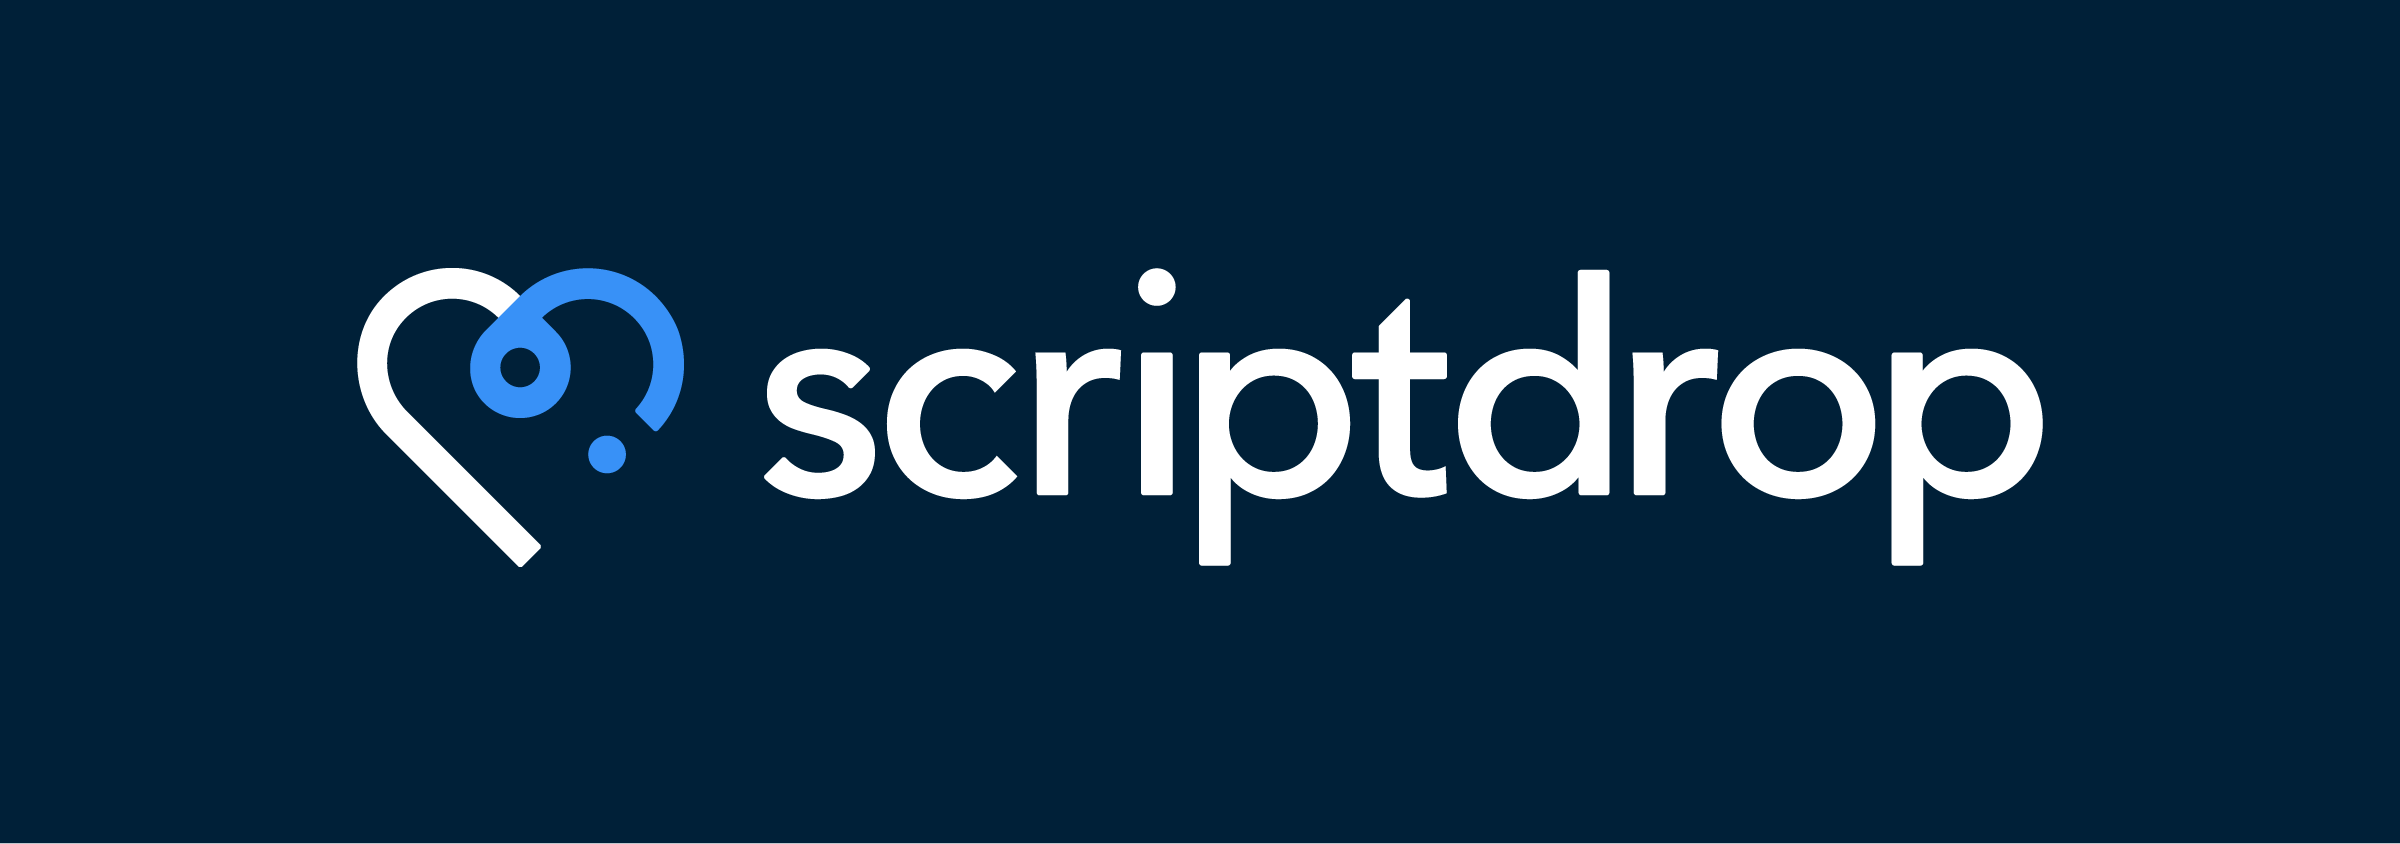 ScriptDrop Company Logo